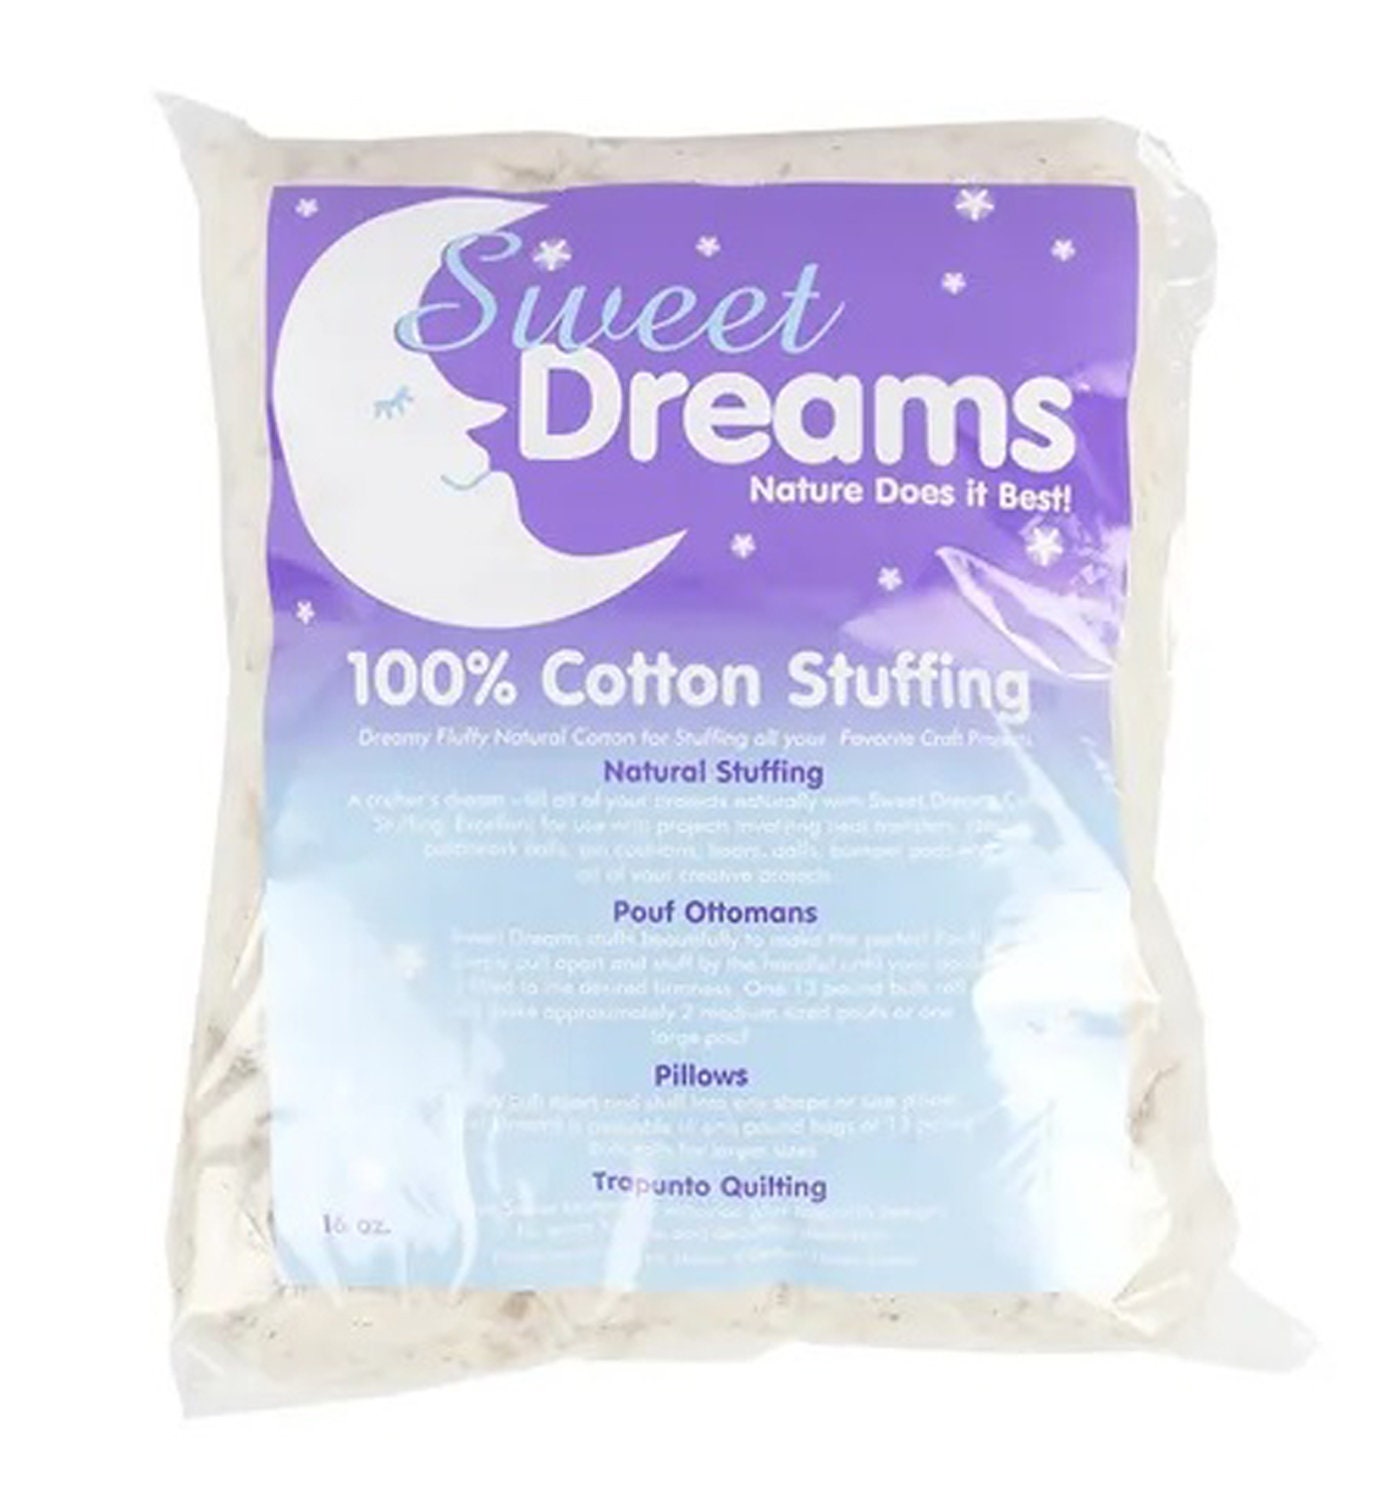 Sweet Dreams - 100% Cotton Stuffing - 16 oz.